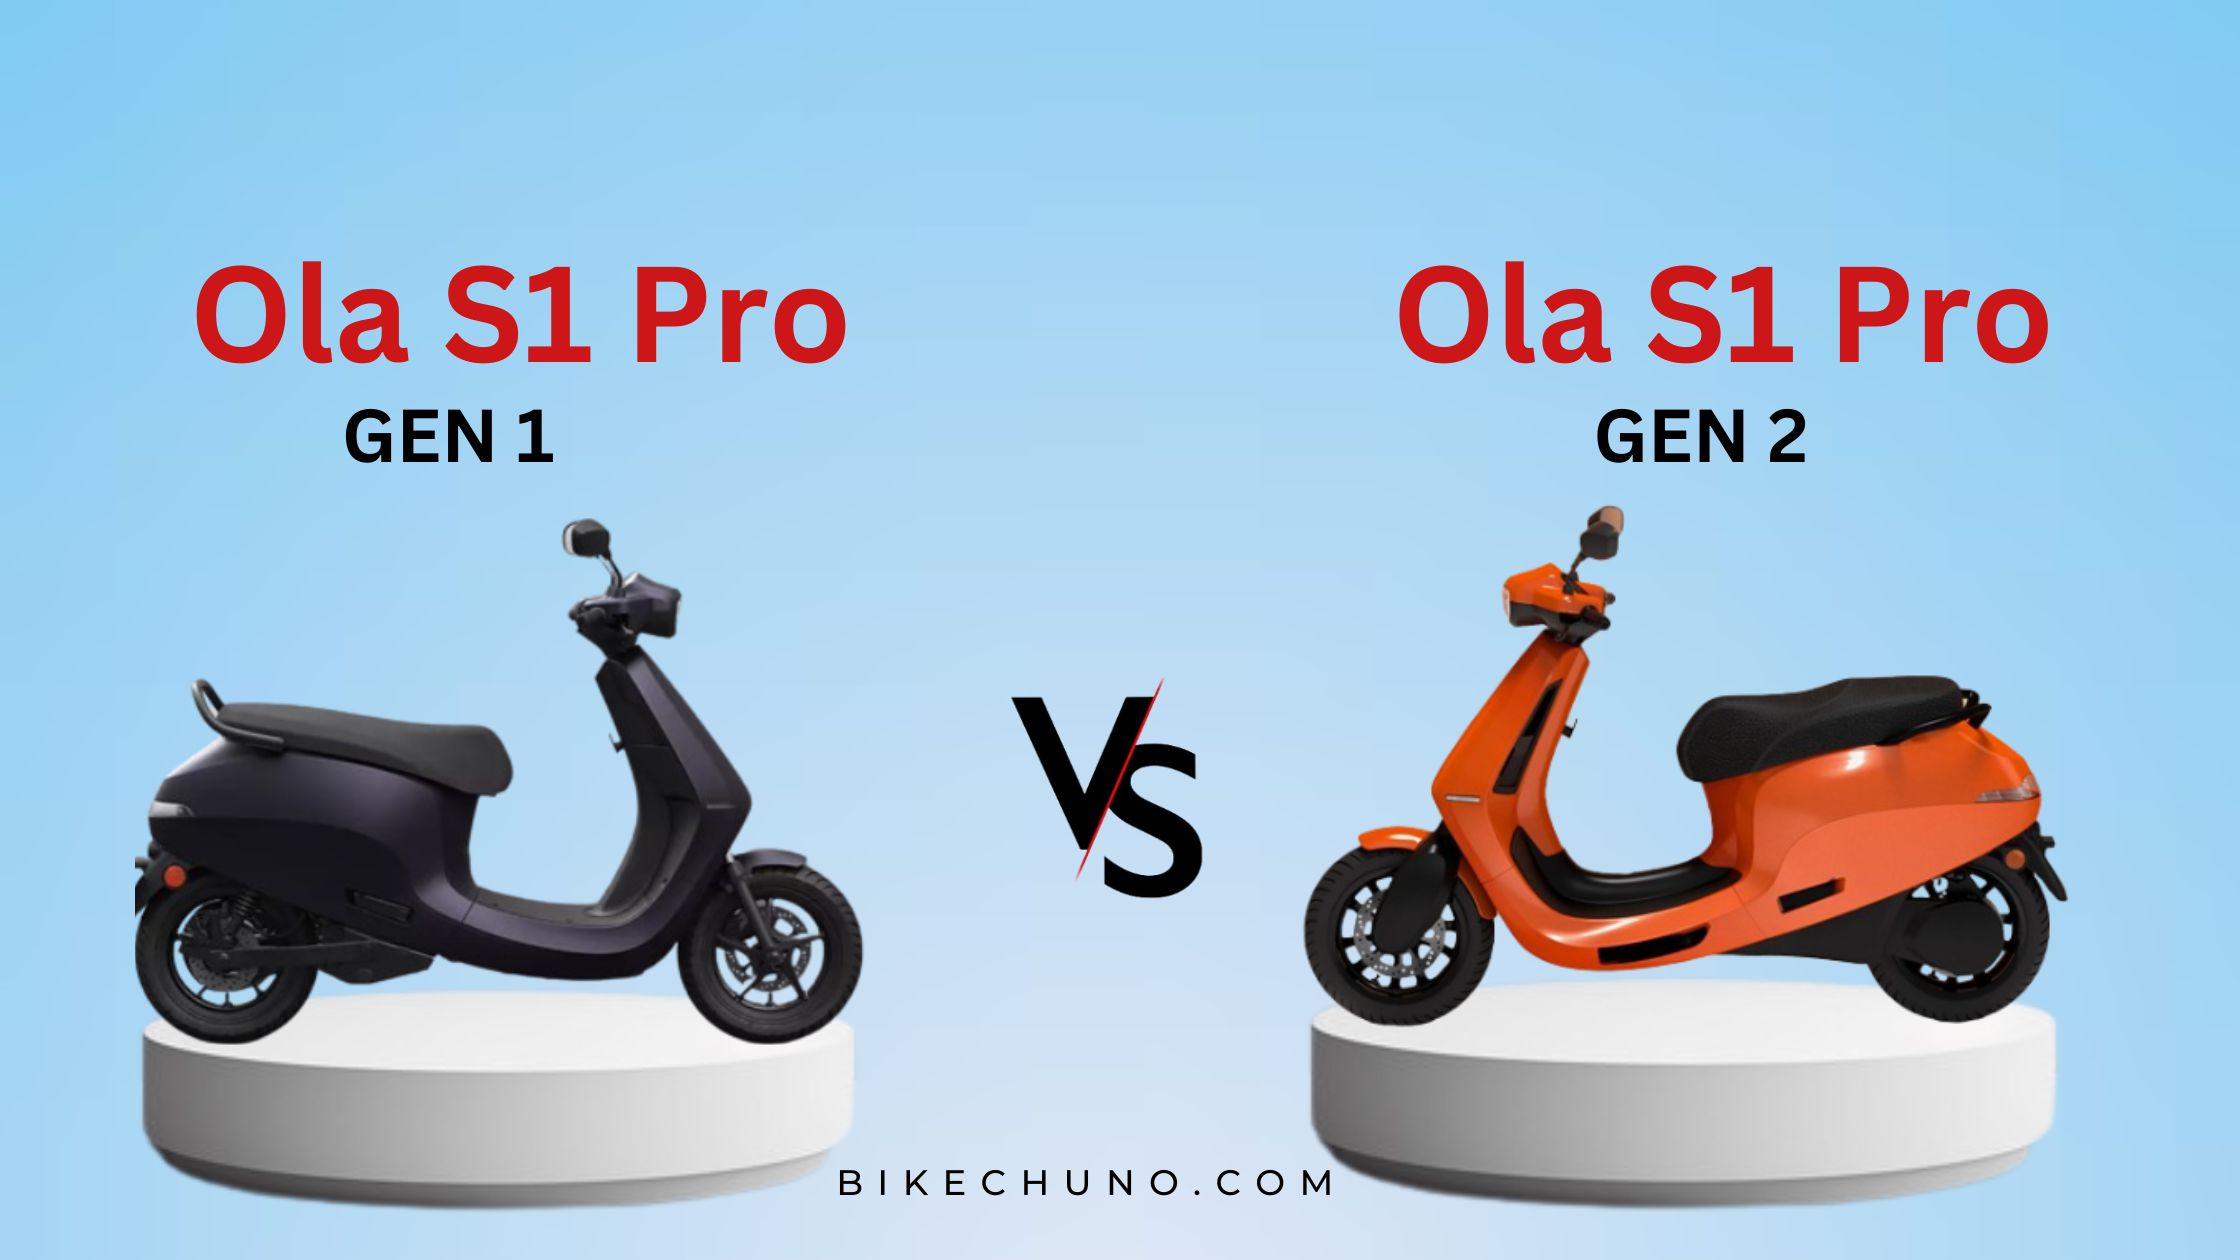 Ola S1 Pro: Gen 1 vs Gen 2